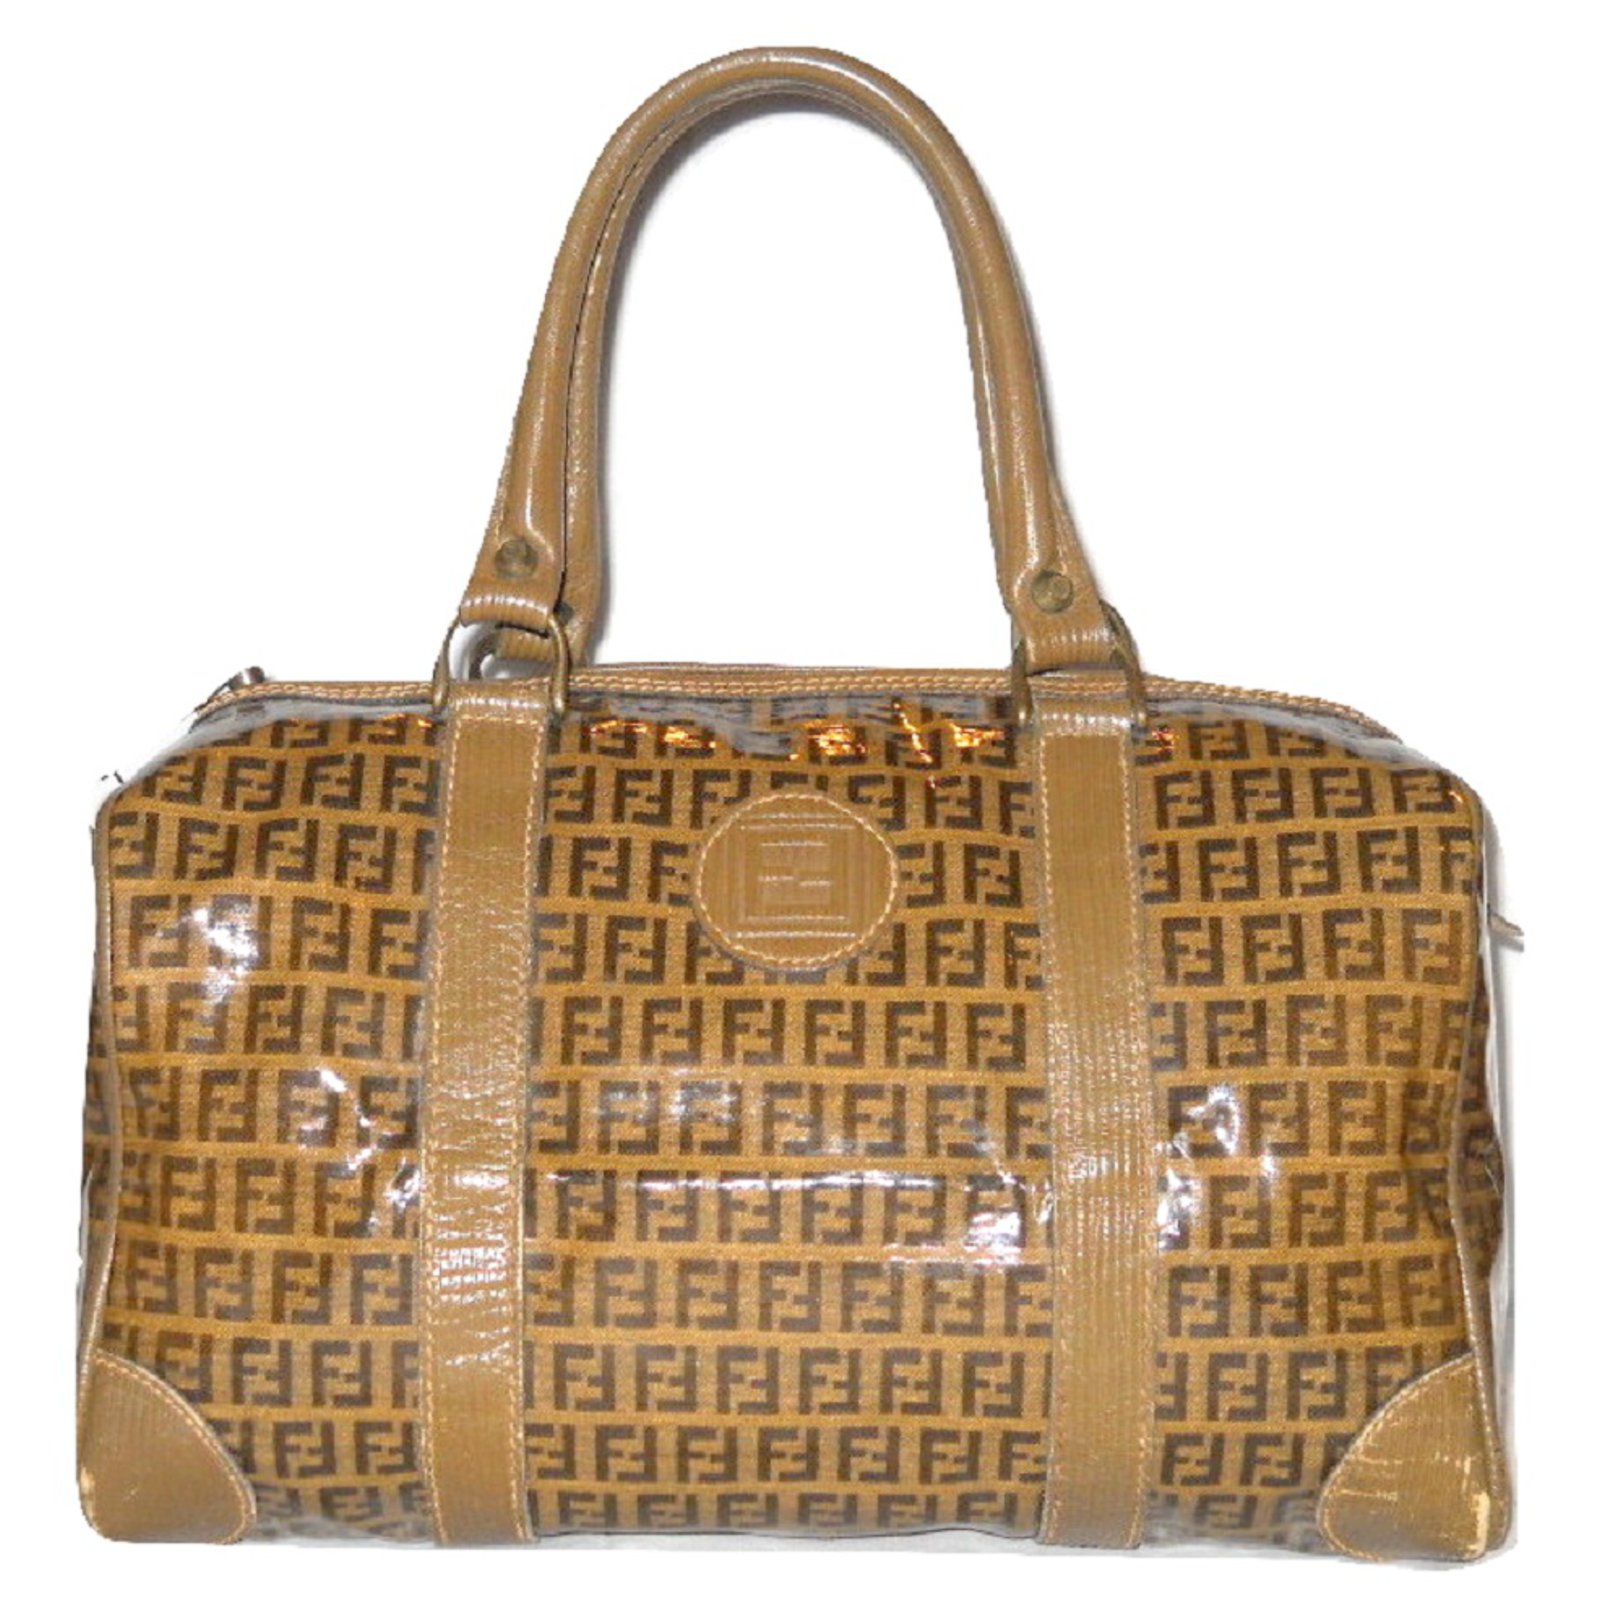 Vintage Fendi bag for women  Buy or Sell designer bags